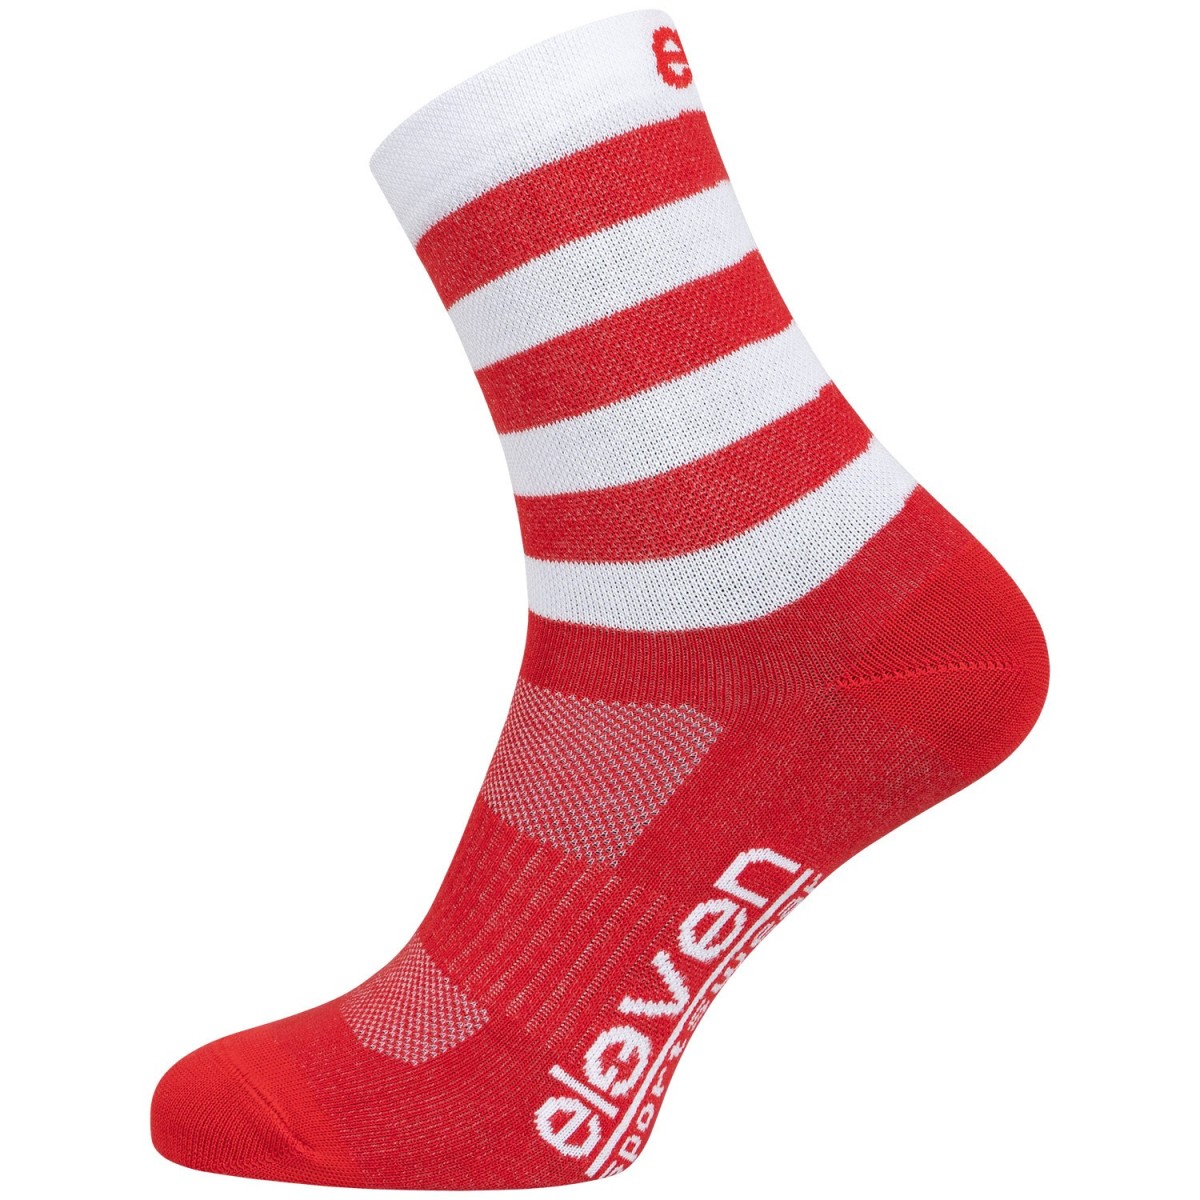 ELEVEN socks SUURI red